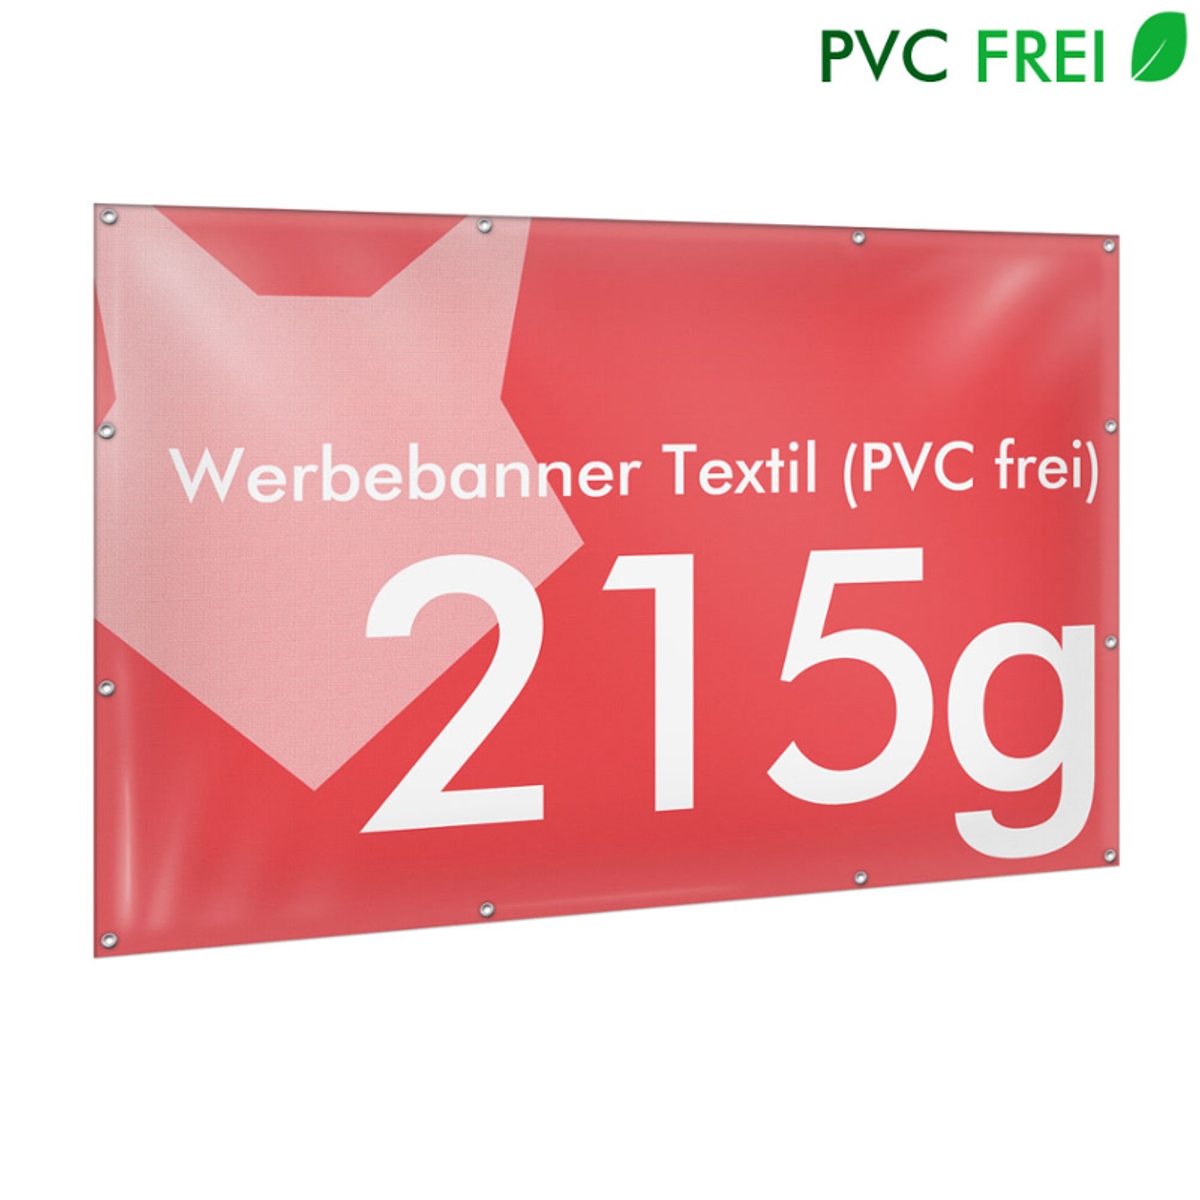 Werbebanner selbst gestalten, 215g Textil Premium B1 (PVC frei)